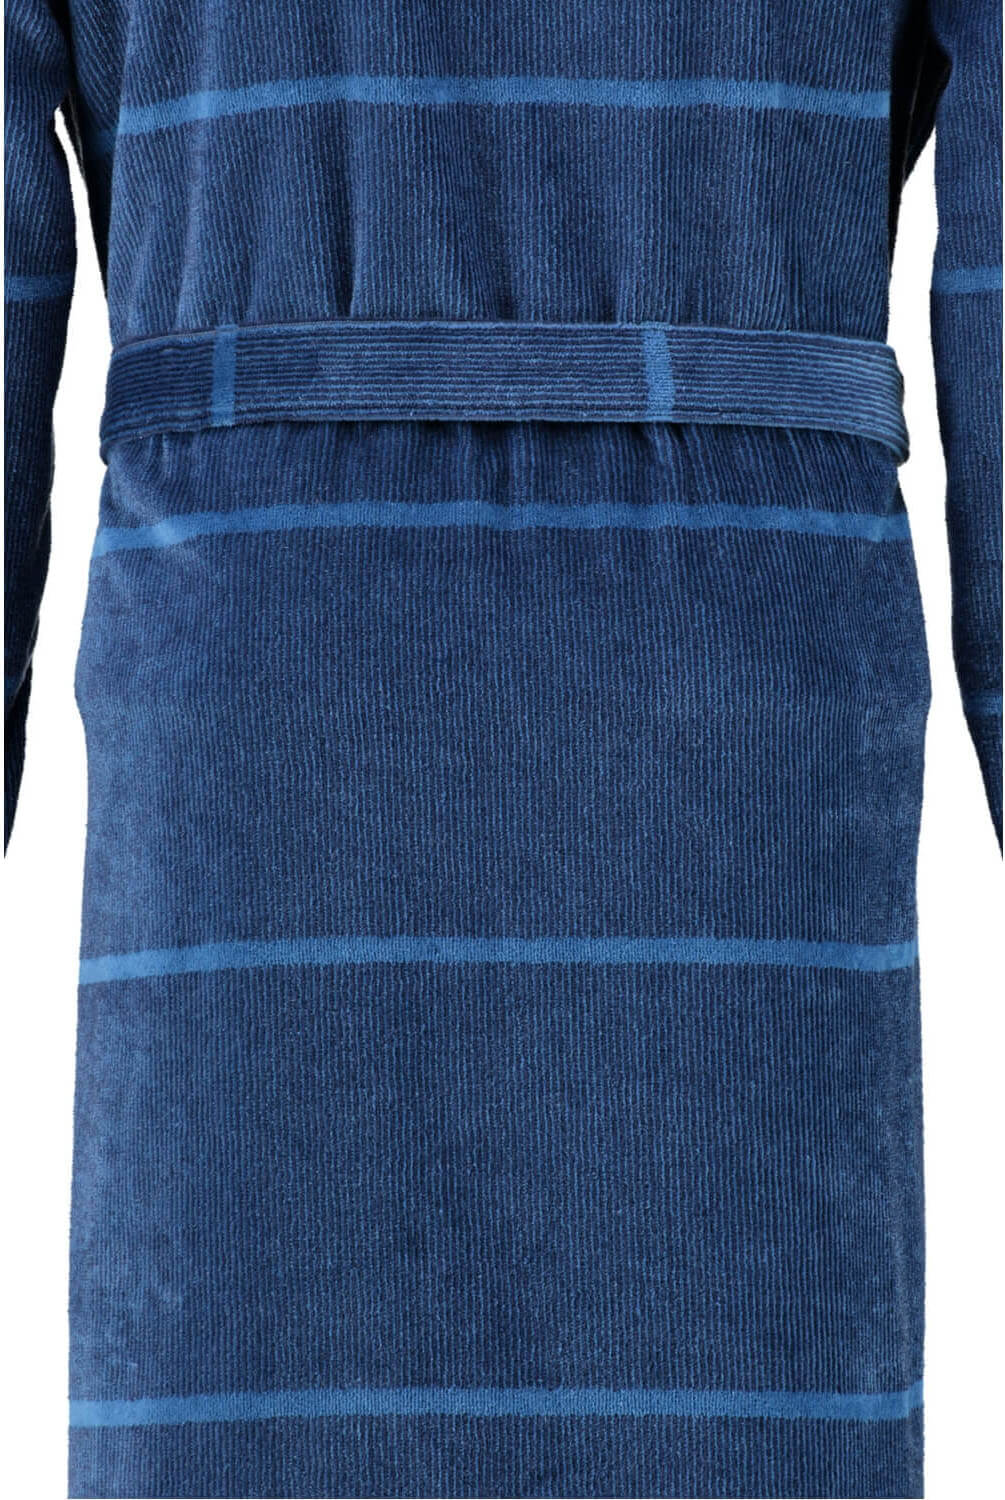 Мужской халат Cawo Kimono Blau ☞ Размер: 48